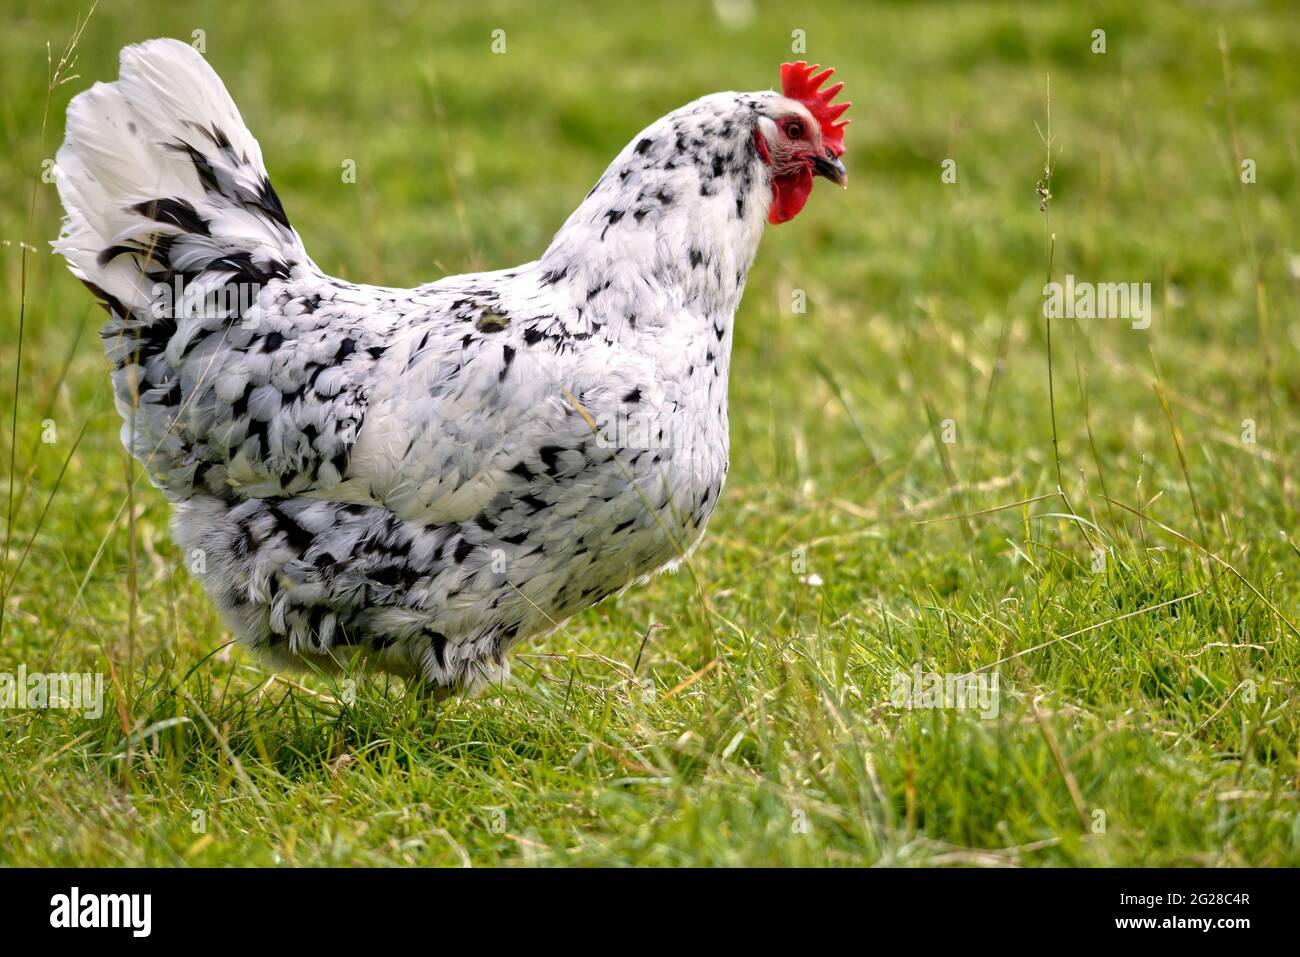 Schwarz-weiße Henne (Gallus), die auf Gras steht und vom Profil aus betrachtet wird Stockfoto